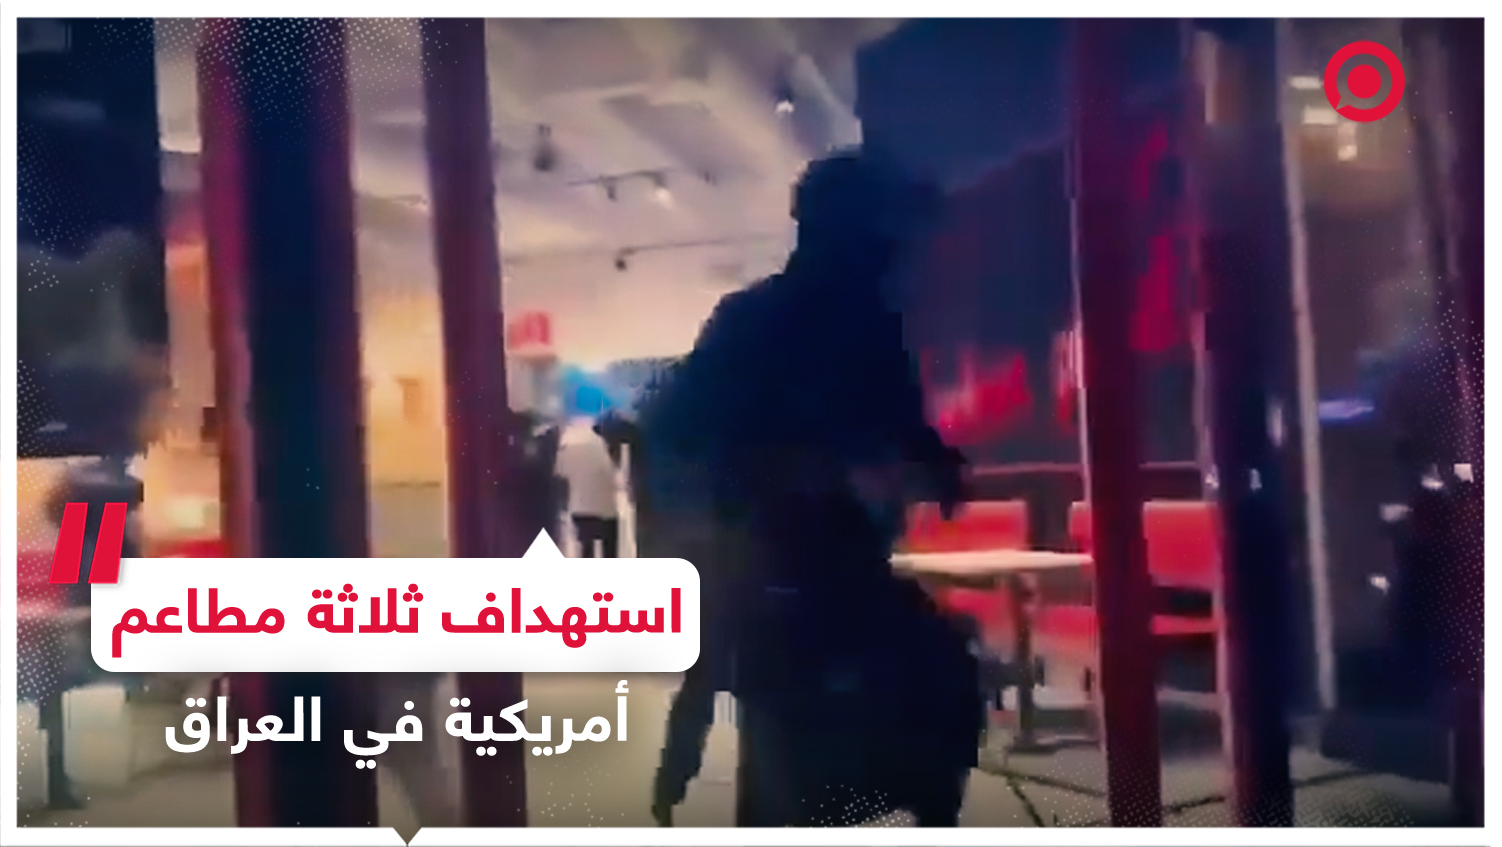 ملثمون يستهدفون ثلاثة مطاعم أمريكية متفرقة في العاصمة العراقية